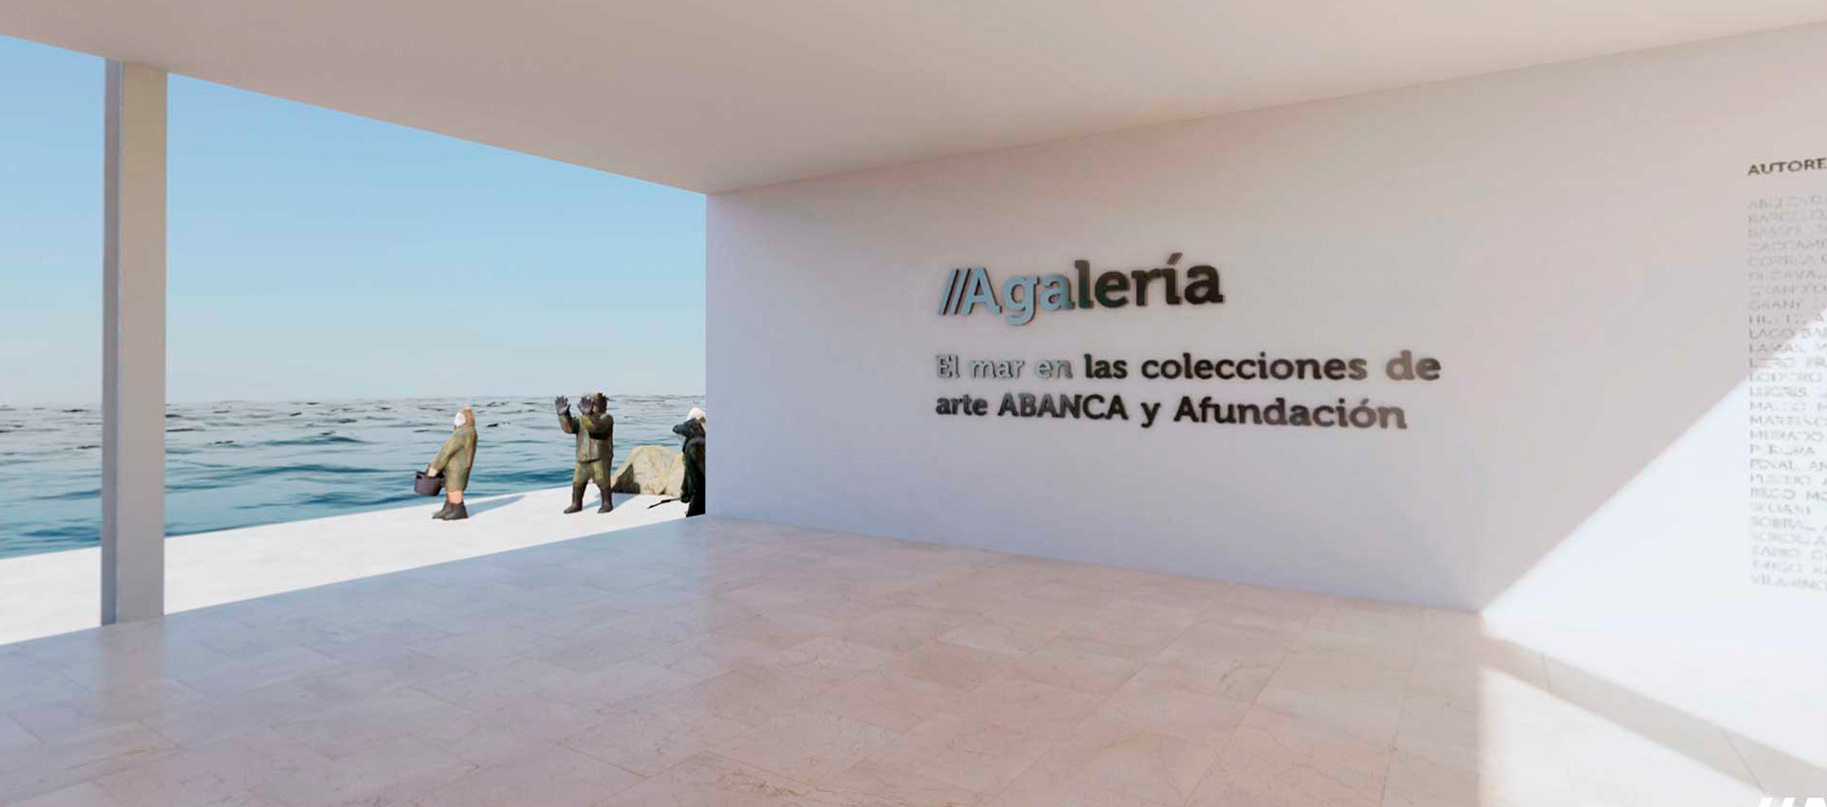  El mar en las colecciones de arte ABANCA y Afundación